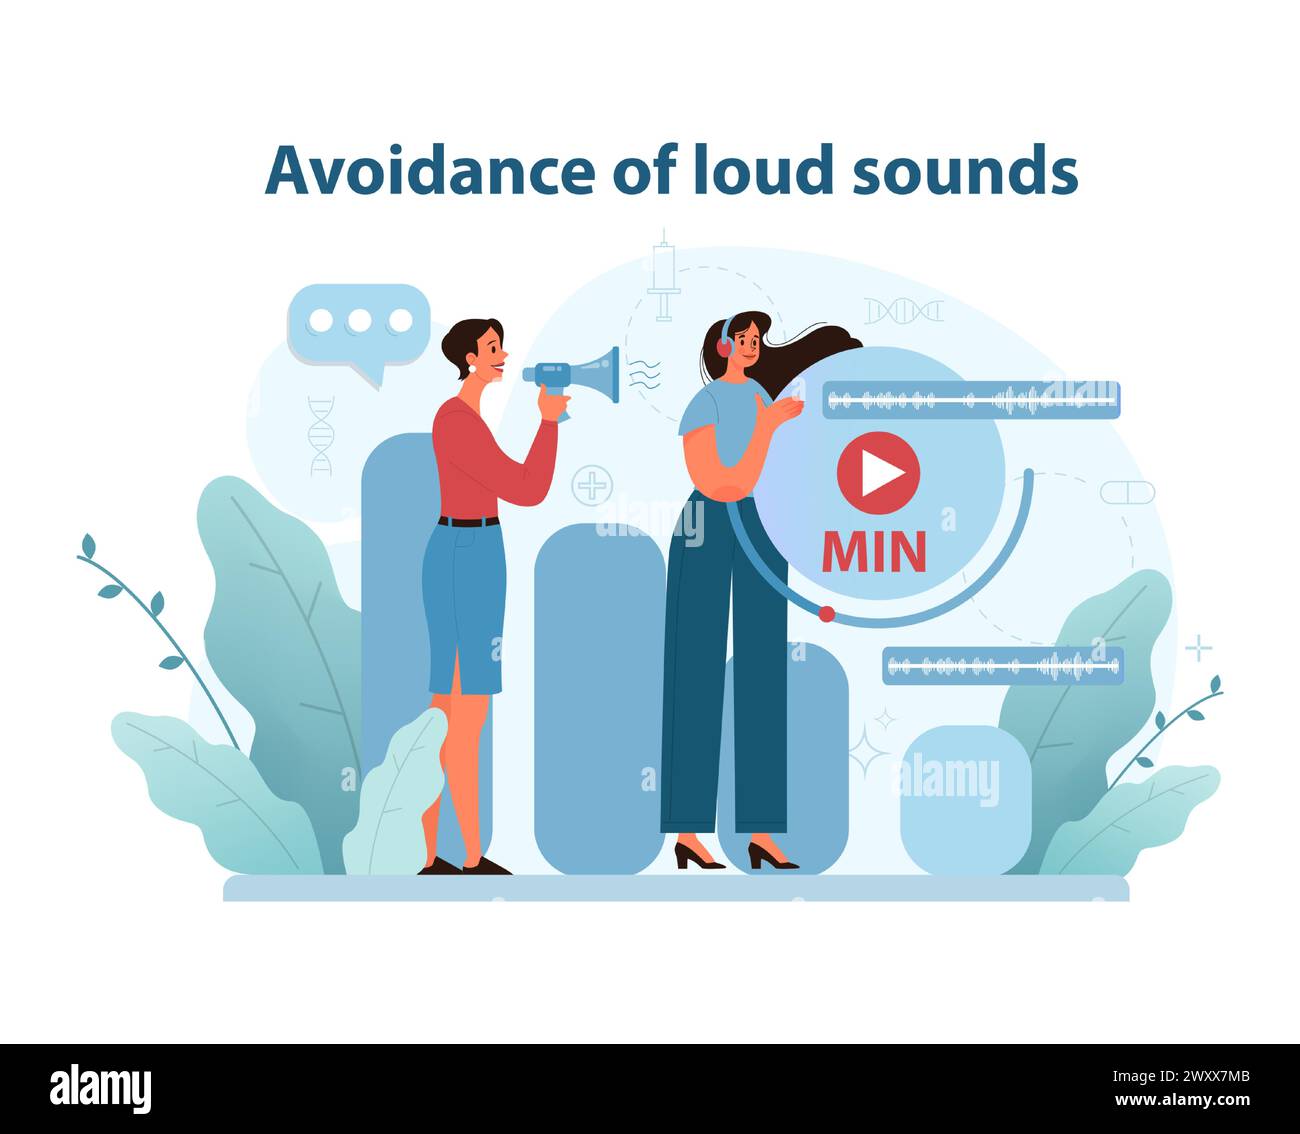 Rauschunterdrückungskonzept. Eine lehrreiche Vektorgrafik, in der Einzelpersonen mit minimaler Lautstärkeregelung den Geräuschpegel steuern, um das Gehör zu schützen. Illustration des flachen Vektors. Stock Vektor